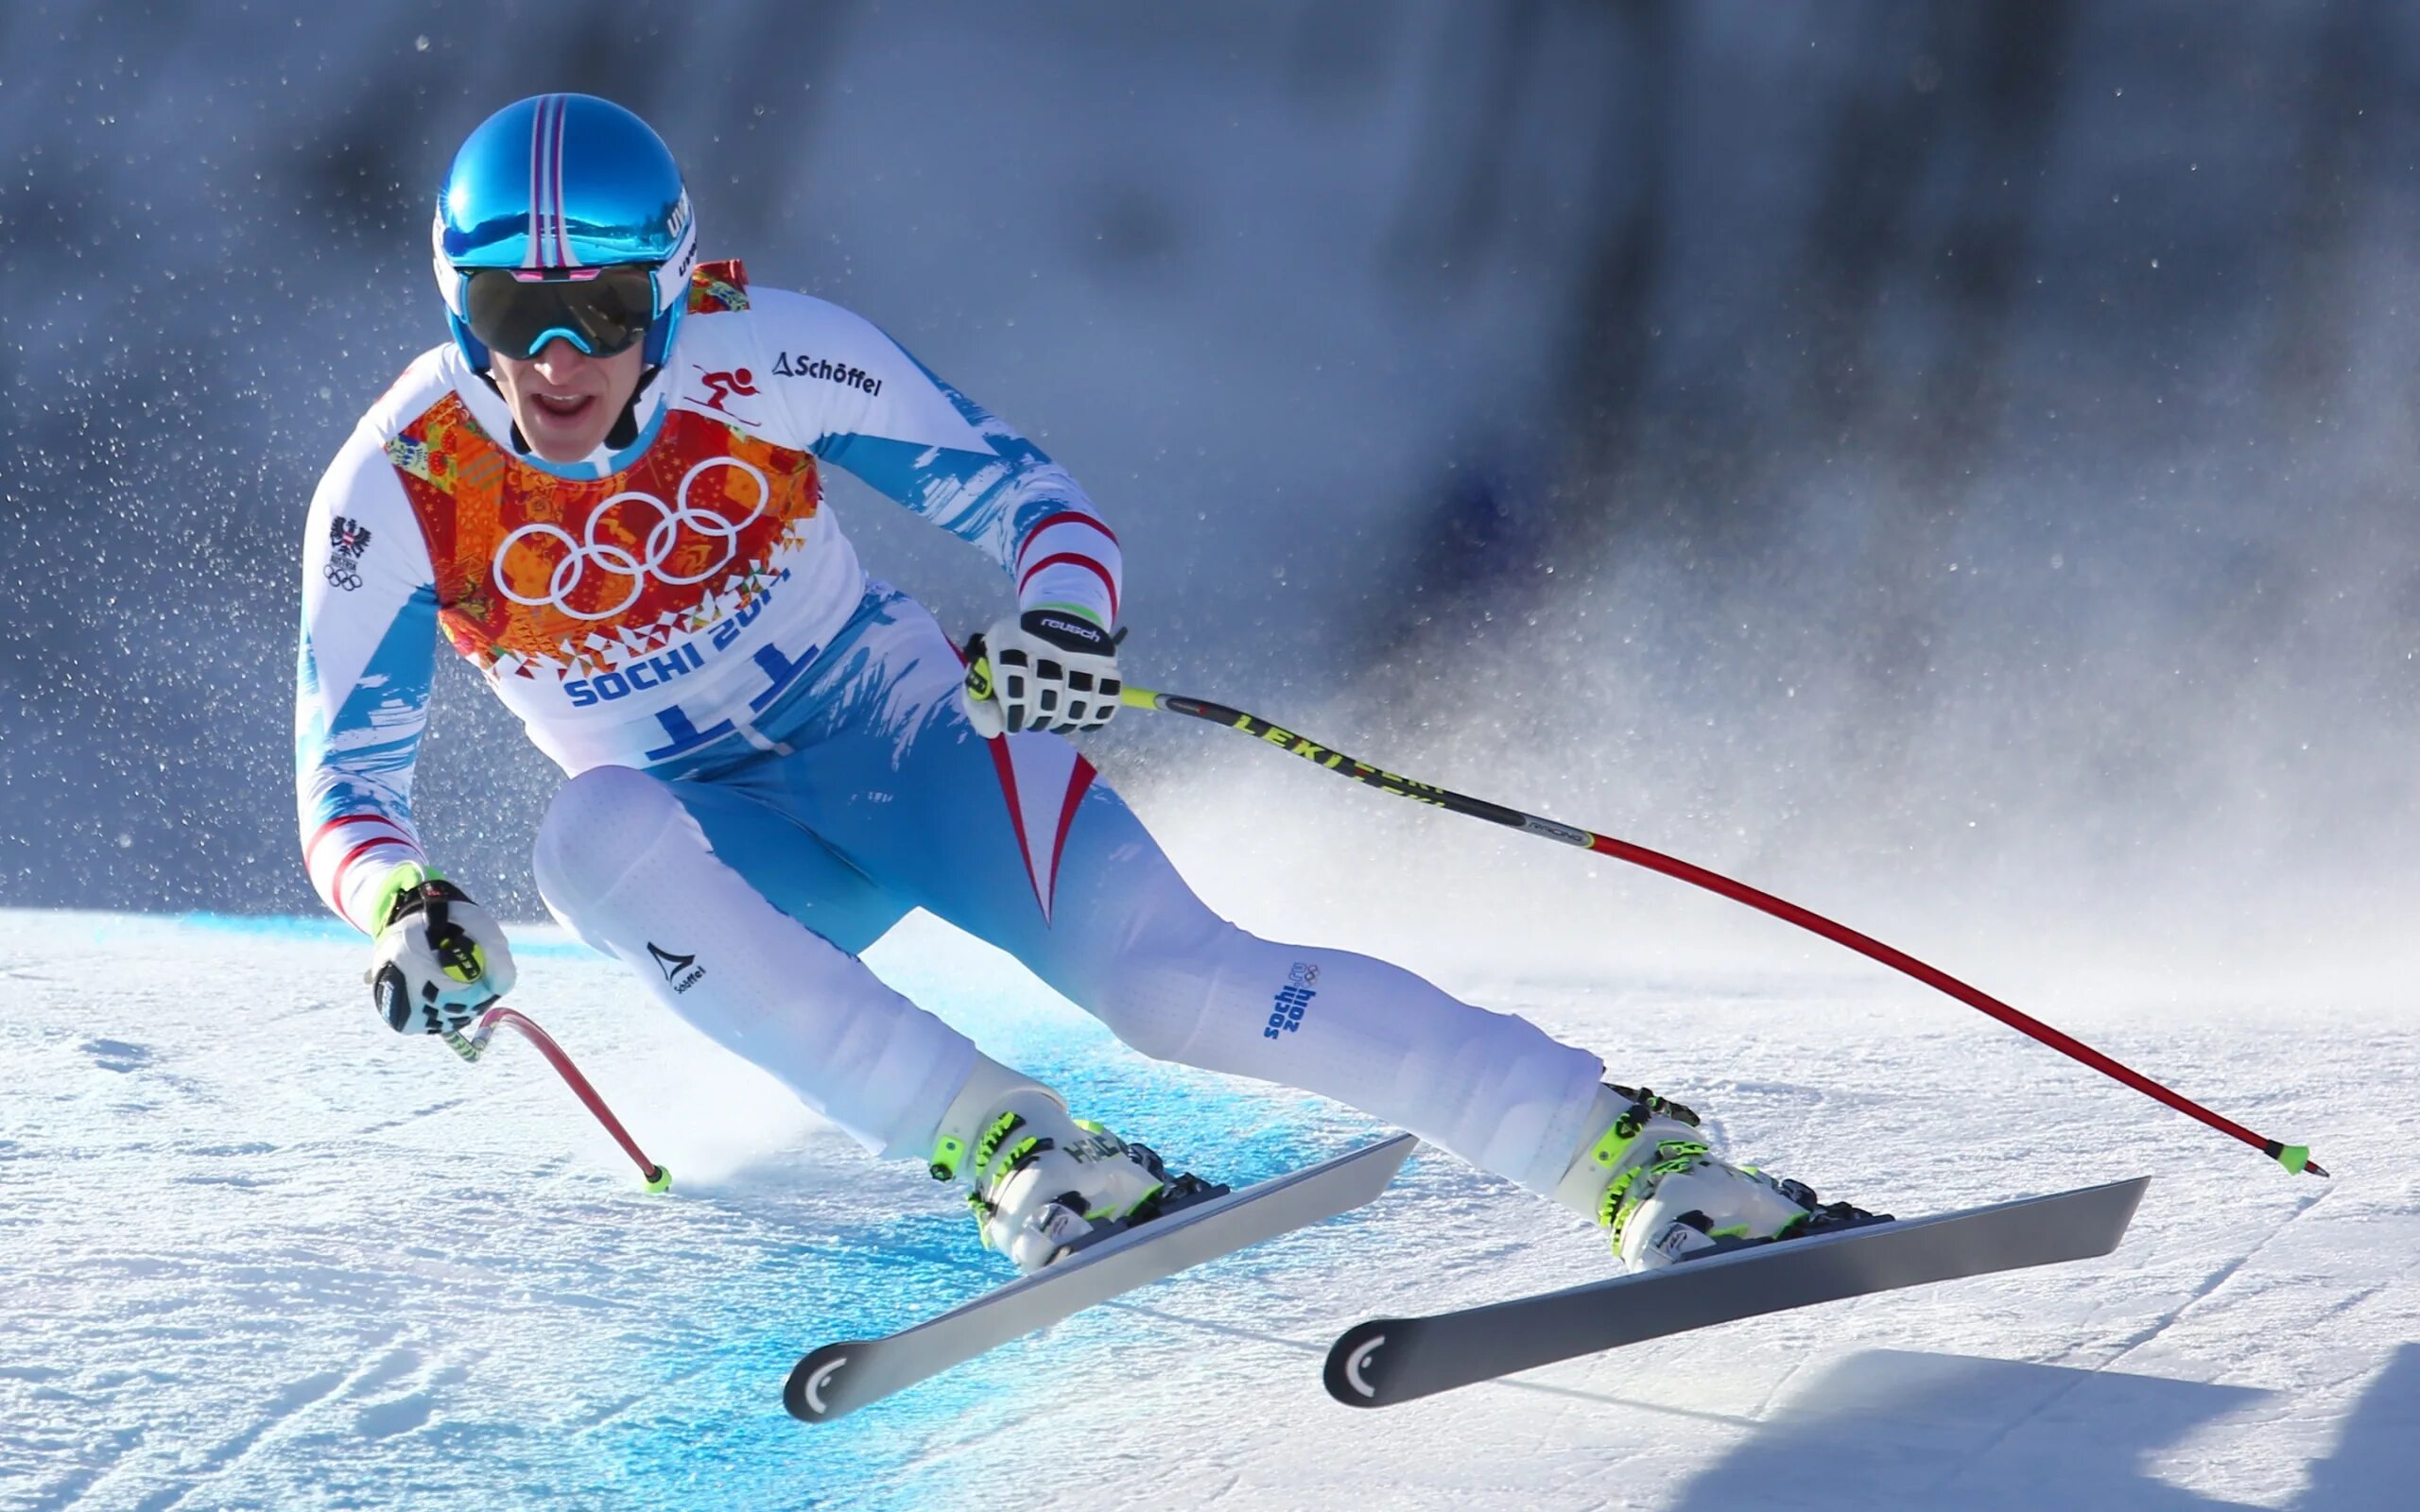 Ски время человека. Alpine Skiing Downhill 2014. Горнолыжный спорт. Горные лыжи. Портрет горнолыжника.